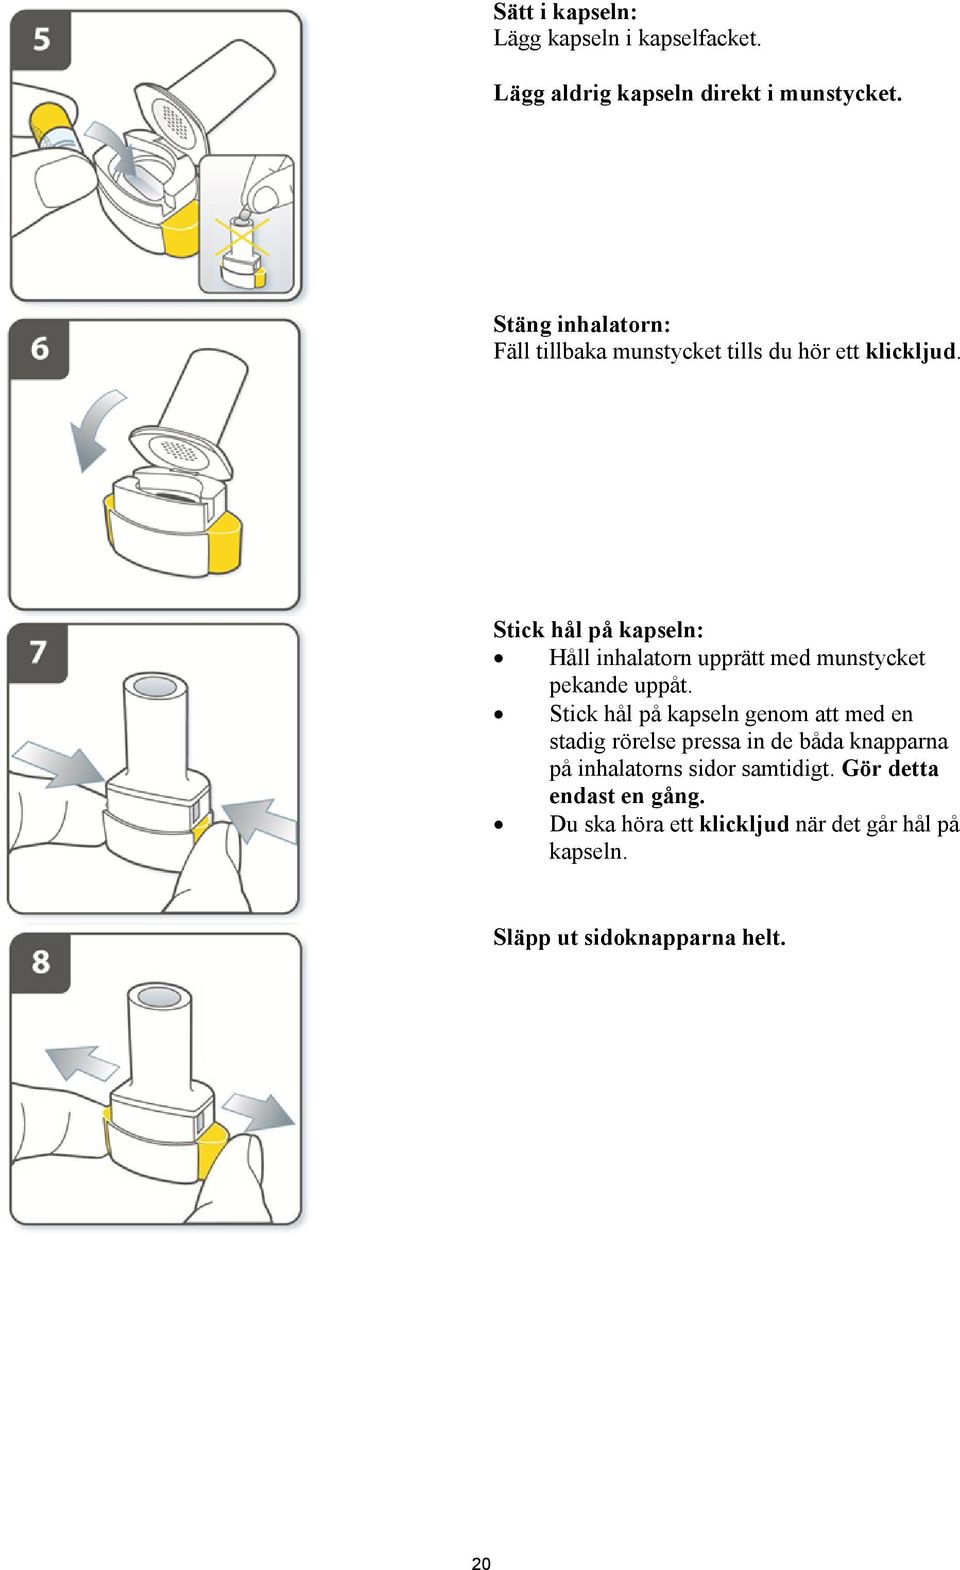 Stick hål på kapseln: Håll inhalatorn upprätt med munstycket pekande uppåt.